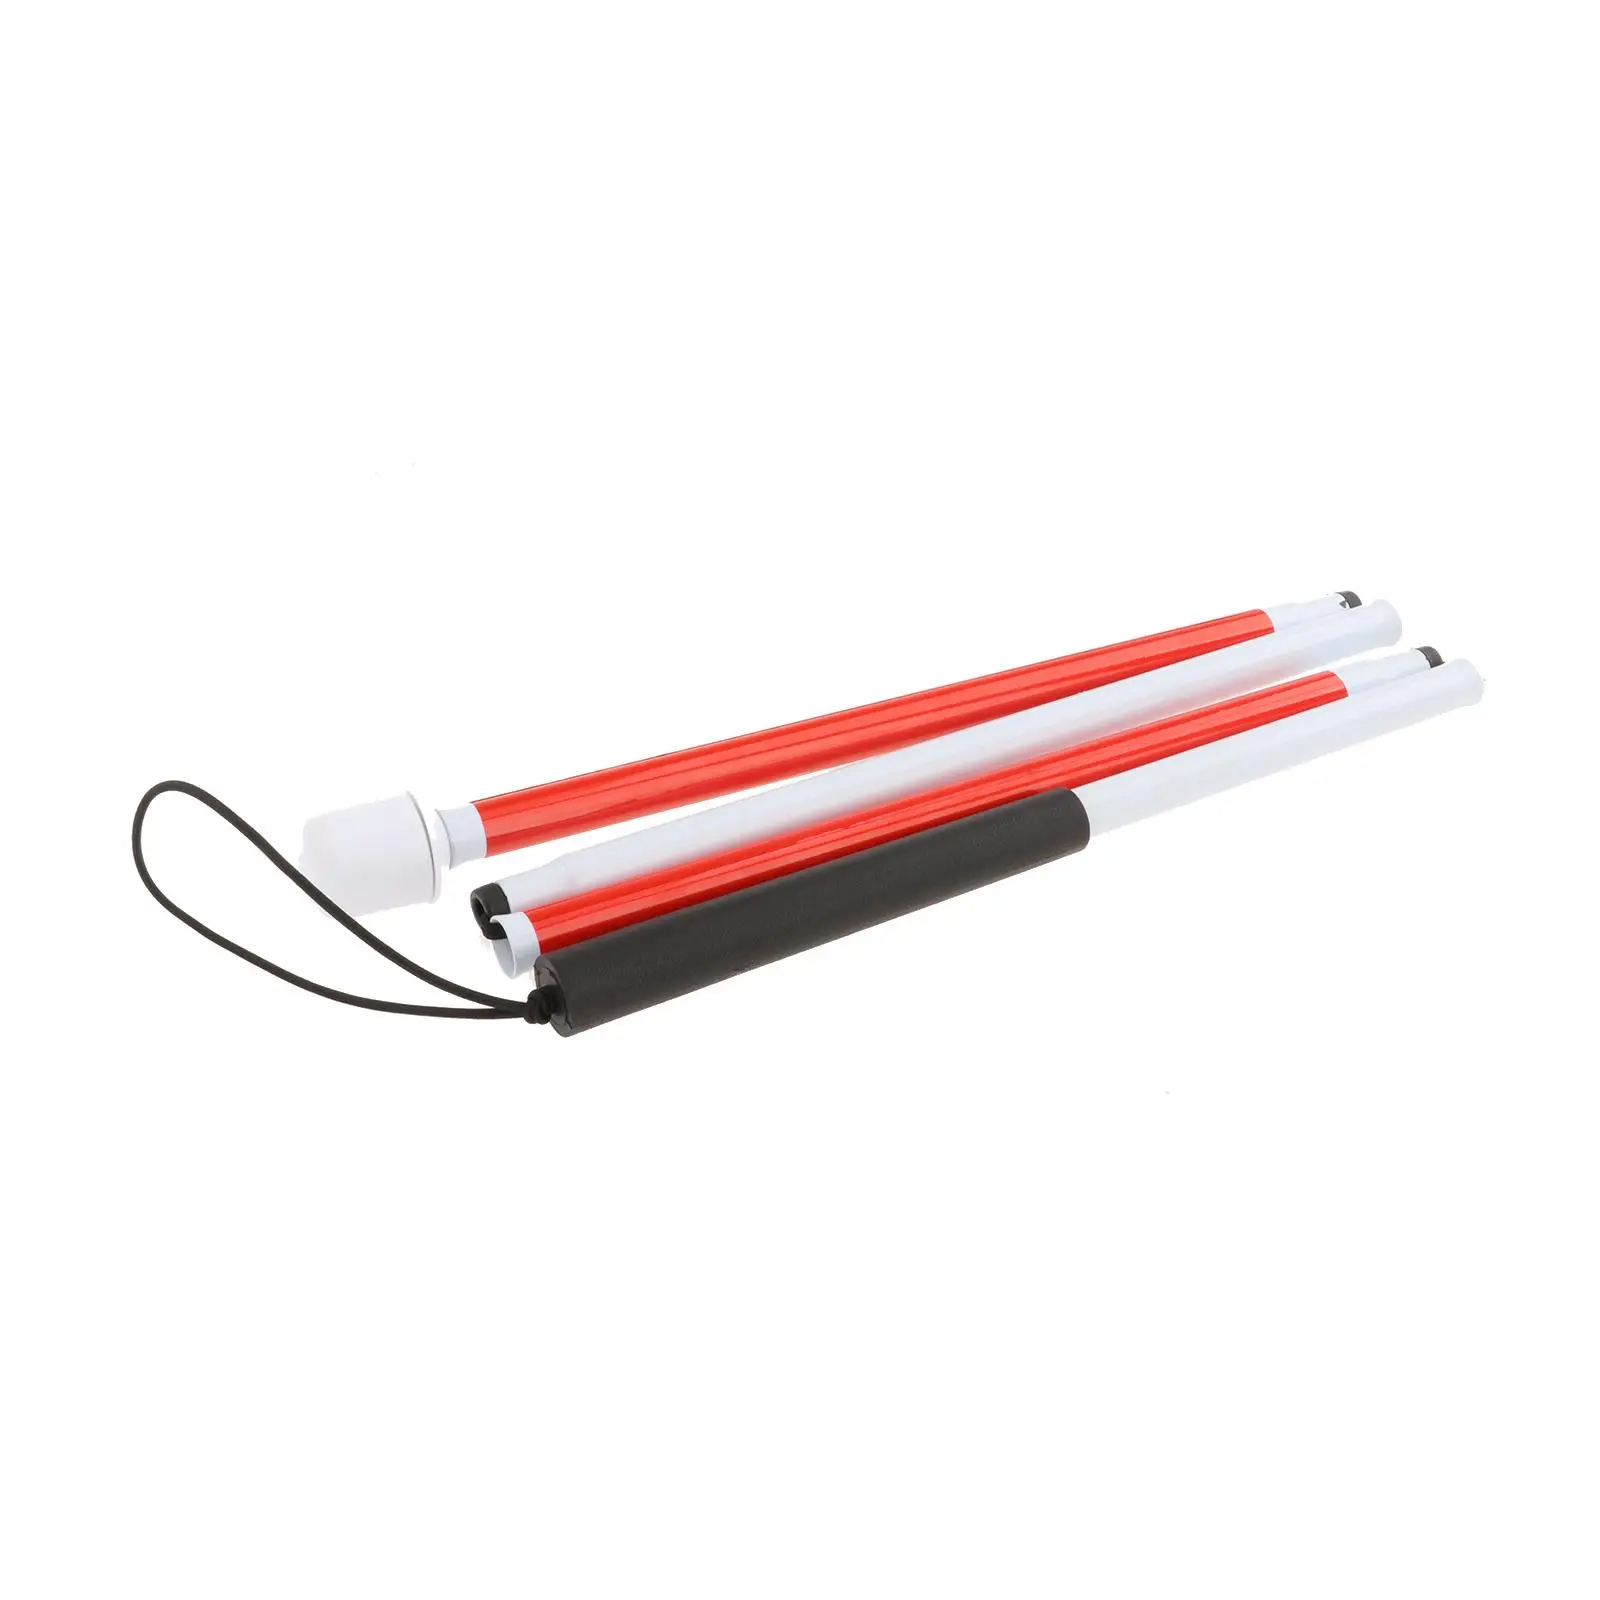 Foldable Blind Cane Adjustable Lightweight Blind Guide Stick for Men Women